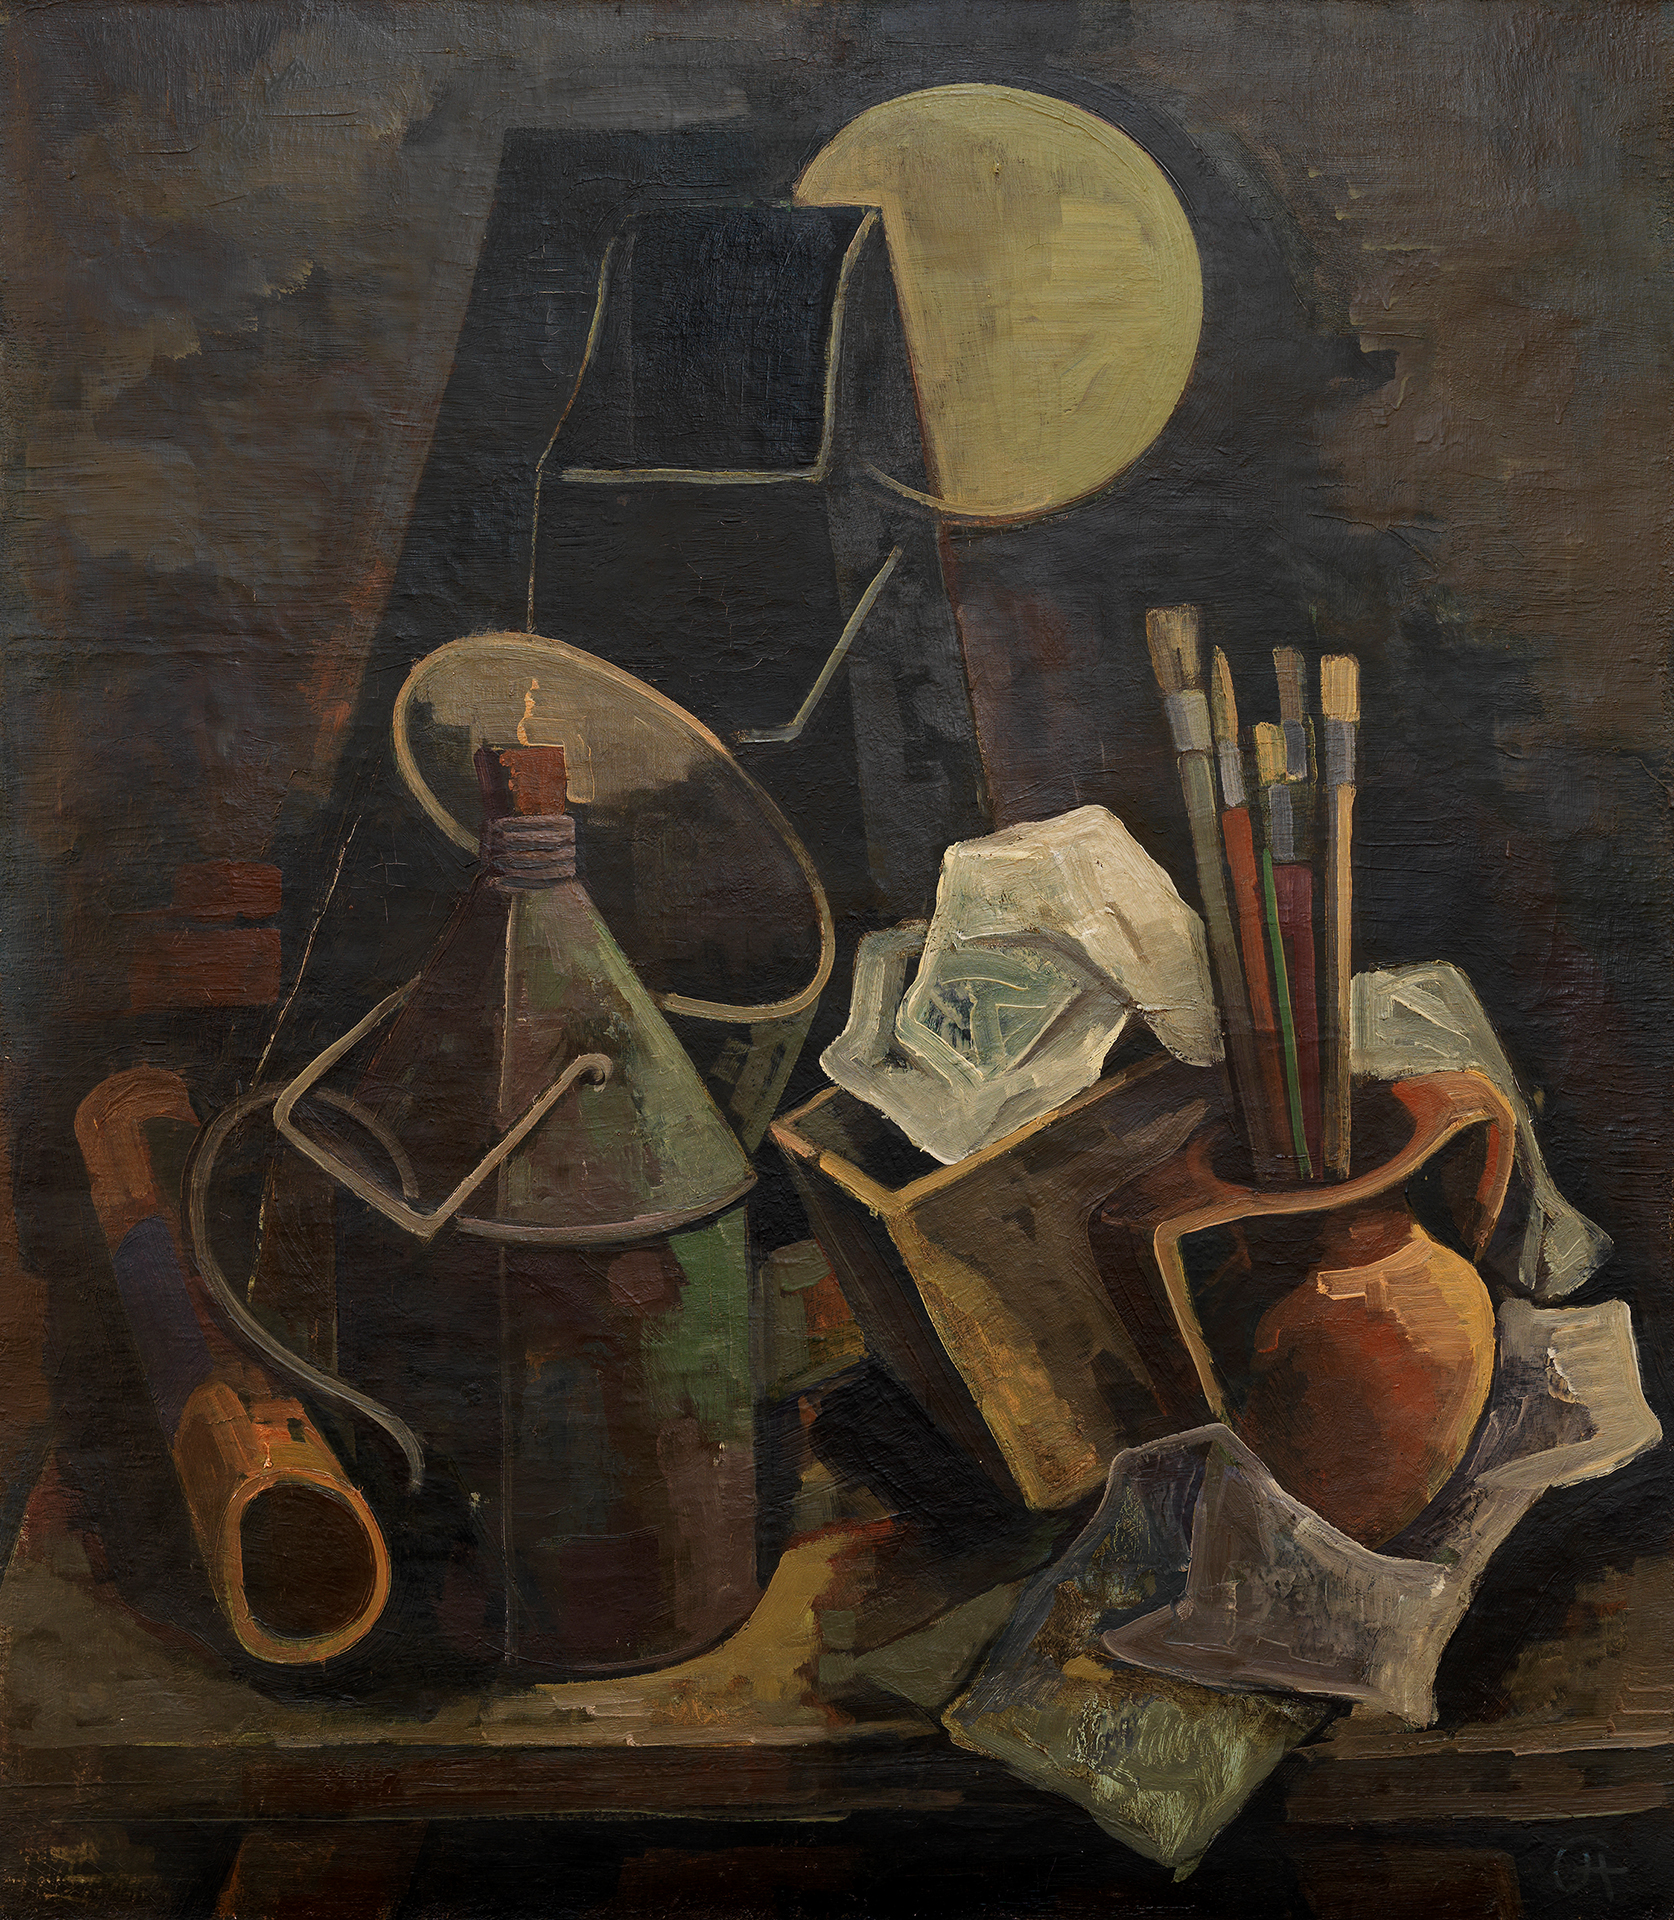 Gemälde von Karl Hofer. Stillleben mit Behältnissen, Pinseln, und zerknülltem Papier vor dunklem Hintergrund mit gelber Kreisform.